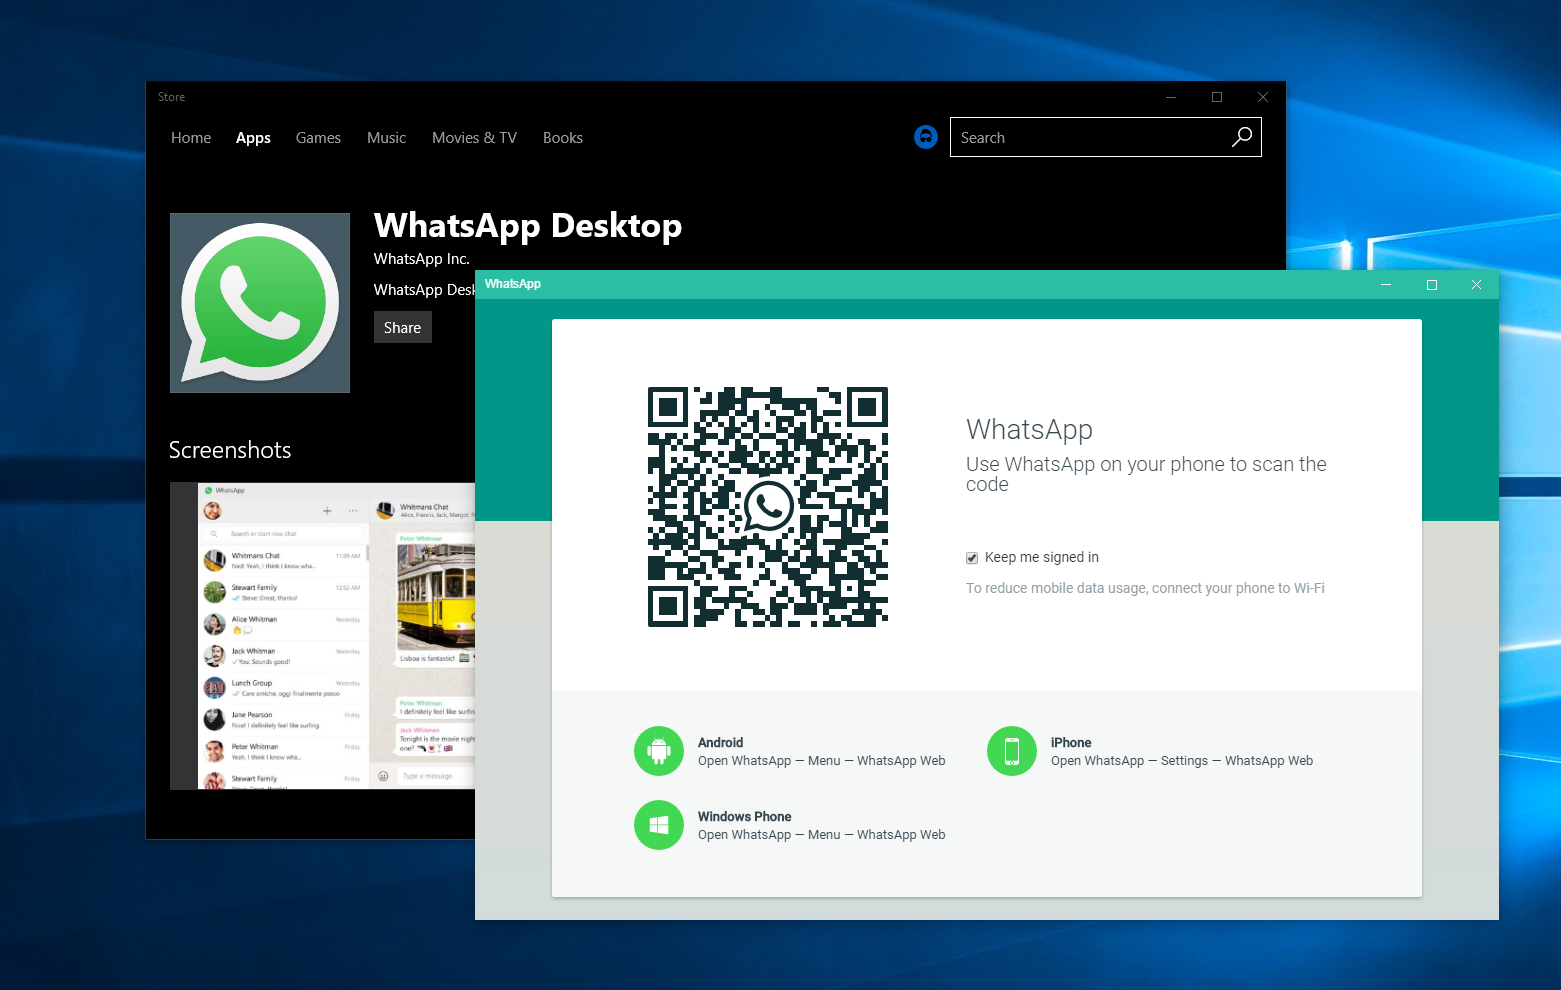 whatsapp desktop app for windows